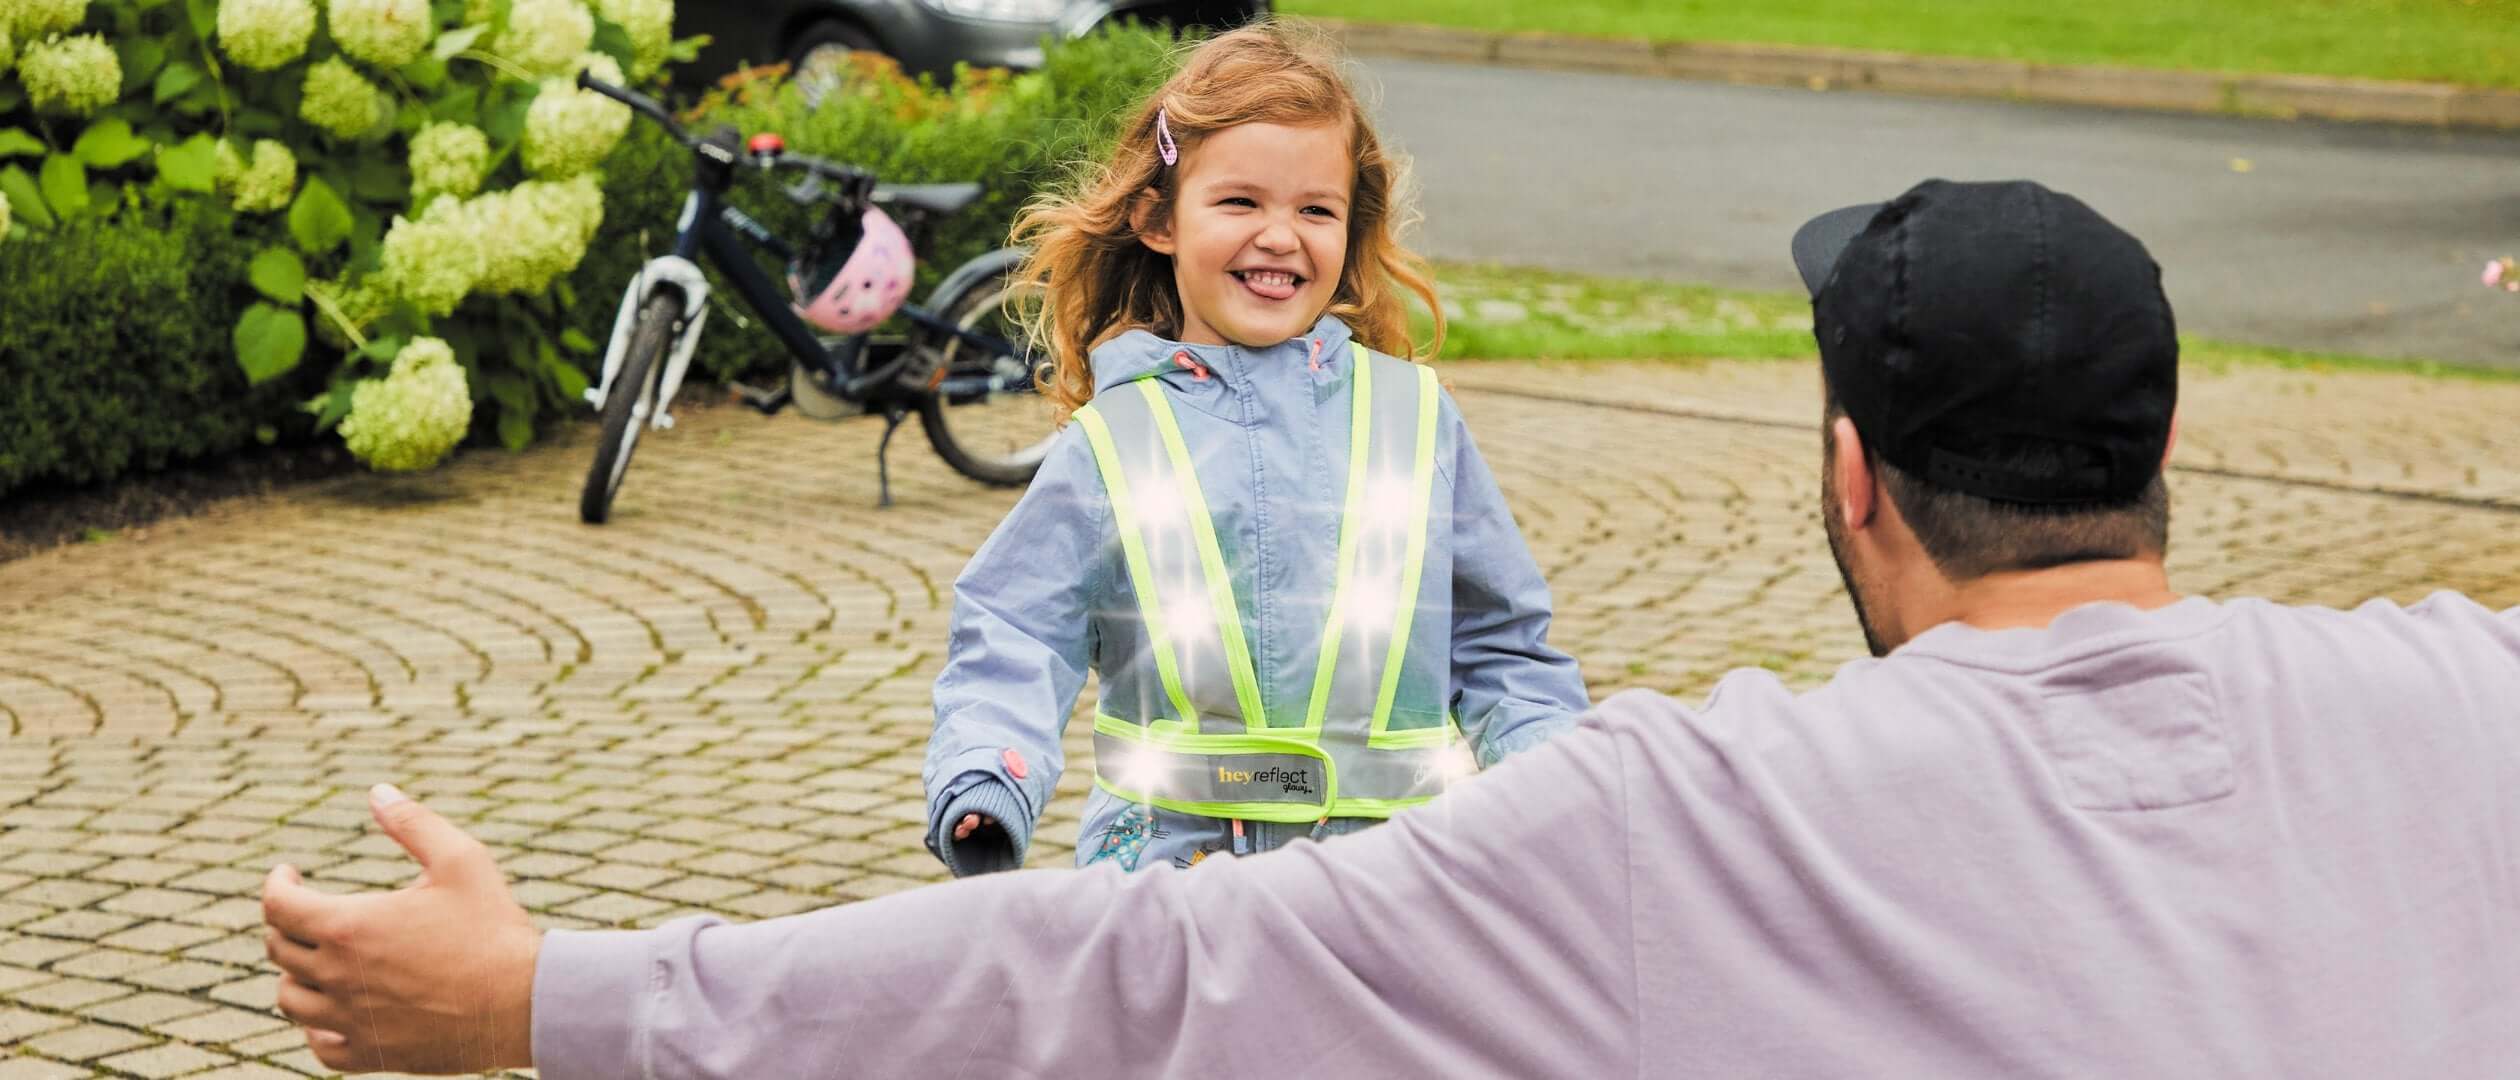 Warnweste Kinder - Kinderwarnweste 45x45cm, Sicherheitsweste für bessere  Sichtbarkeit bei Tag und Nacht, Reflektorweste für Weg zur Schule